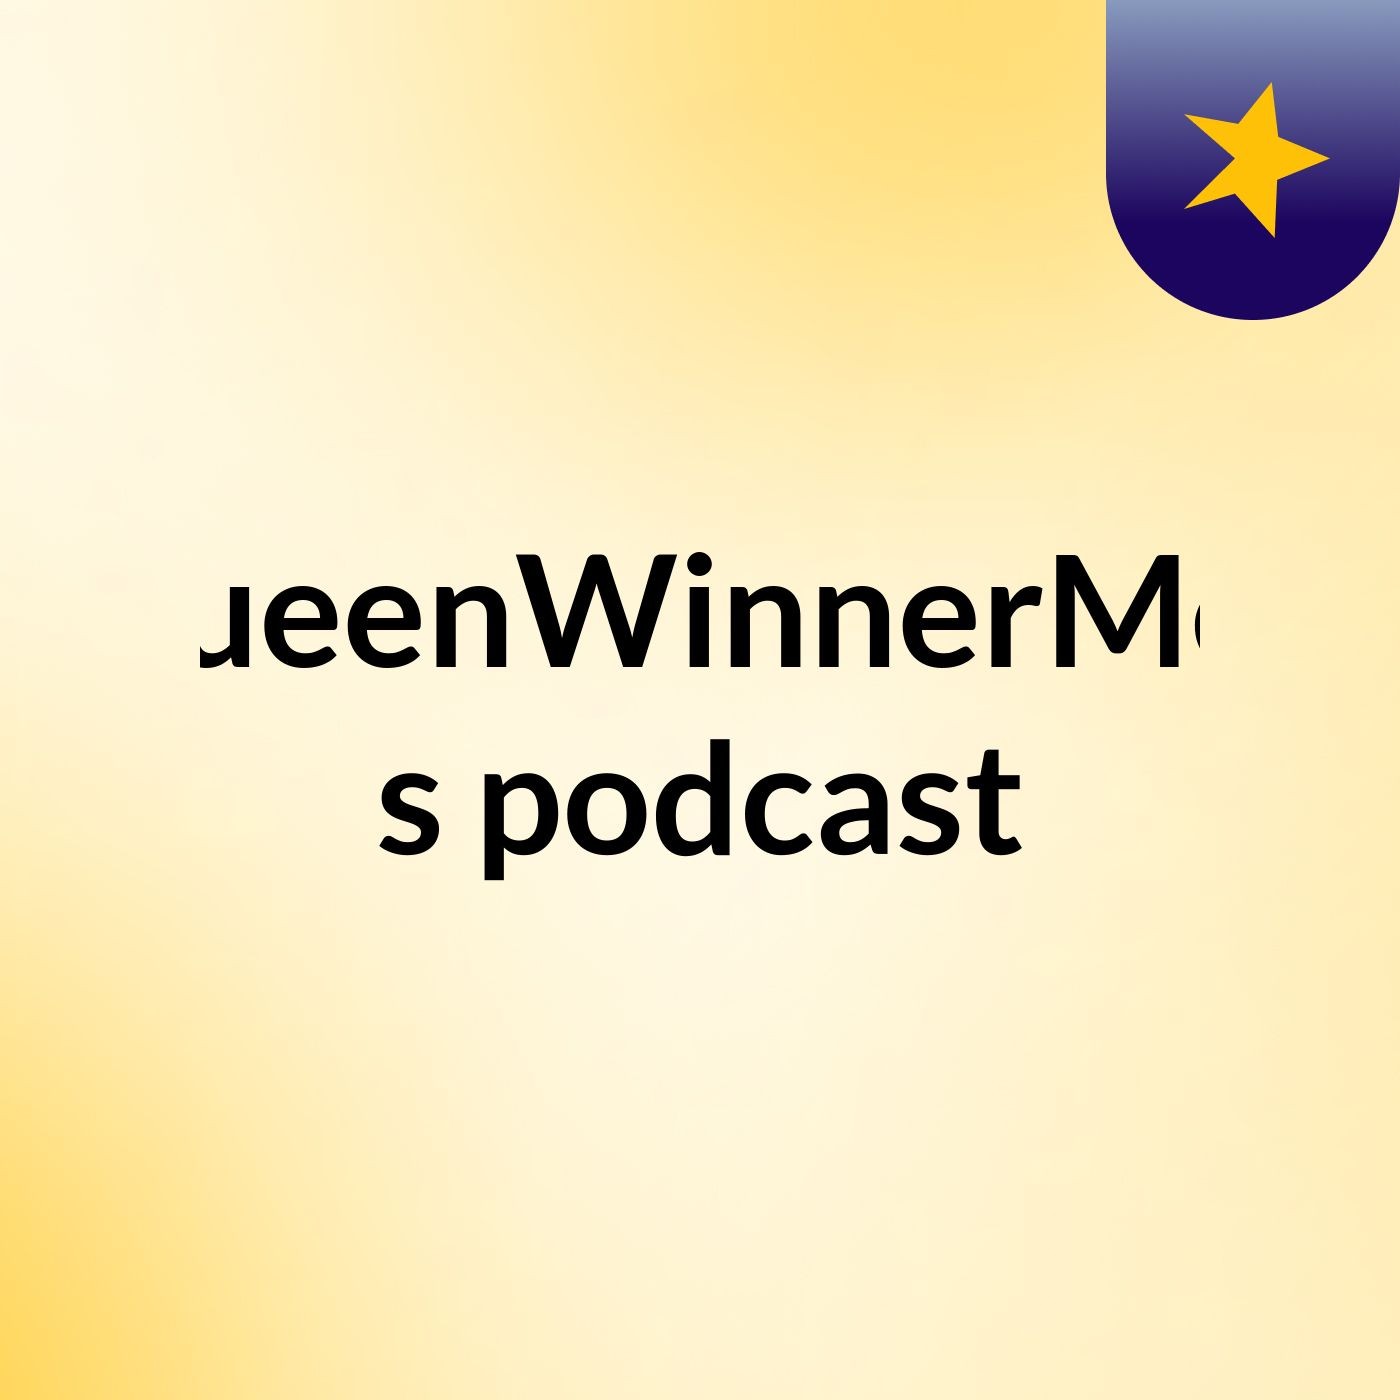 Episode 3 - QueenWinnerMea's podcast